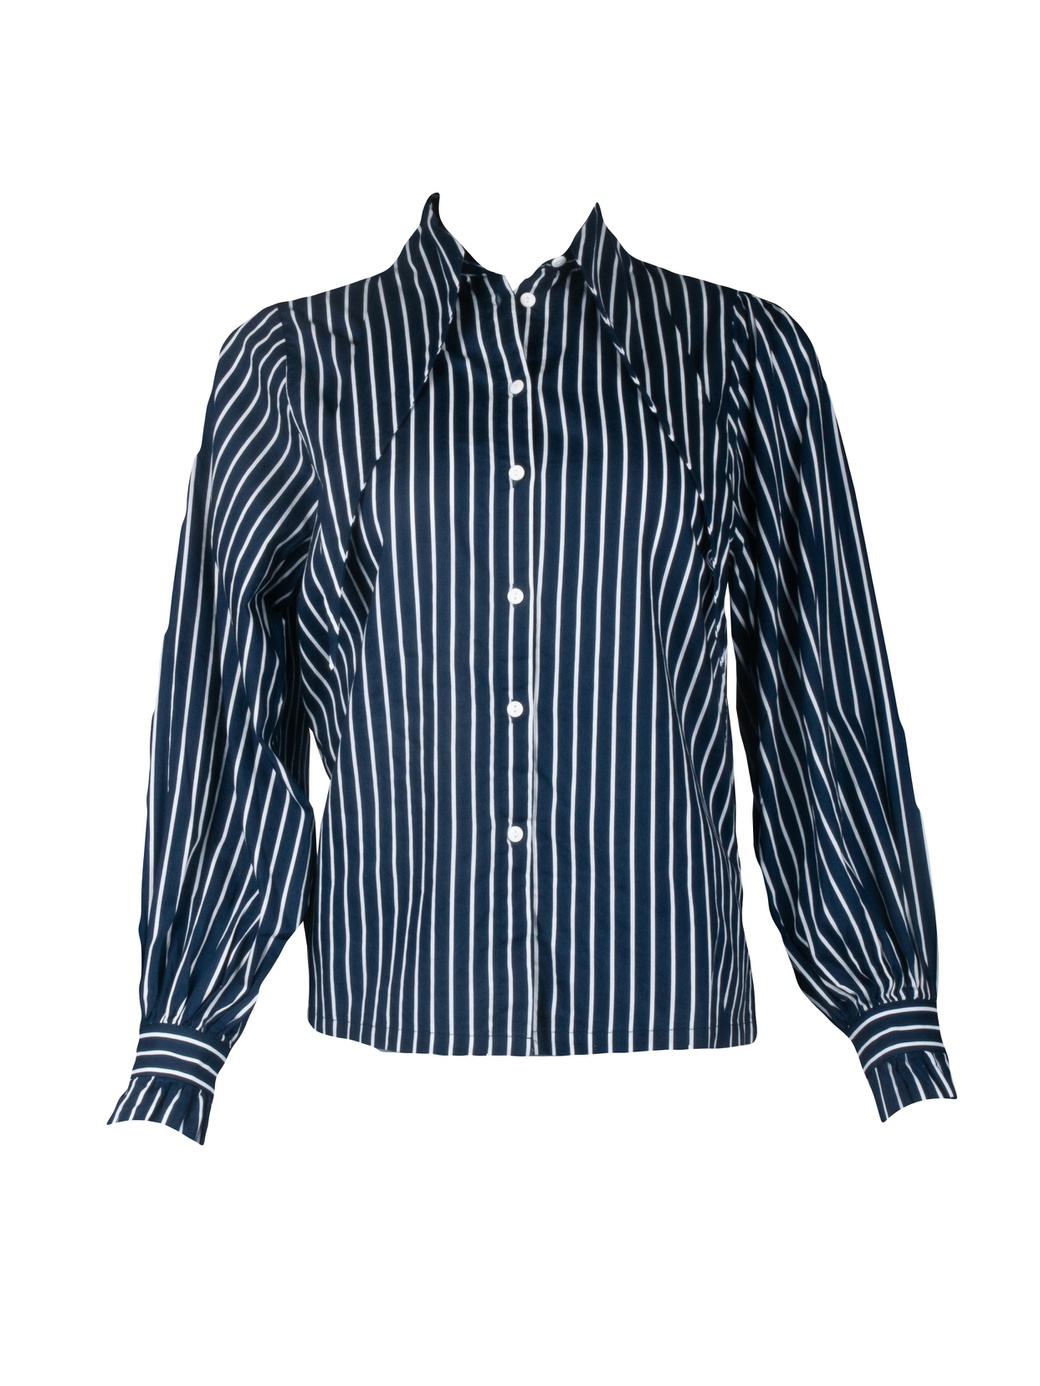 Блуза Minimum в полоску 172530848.16023.FG, синий фото